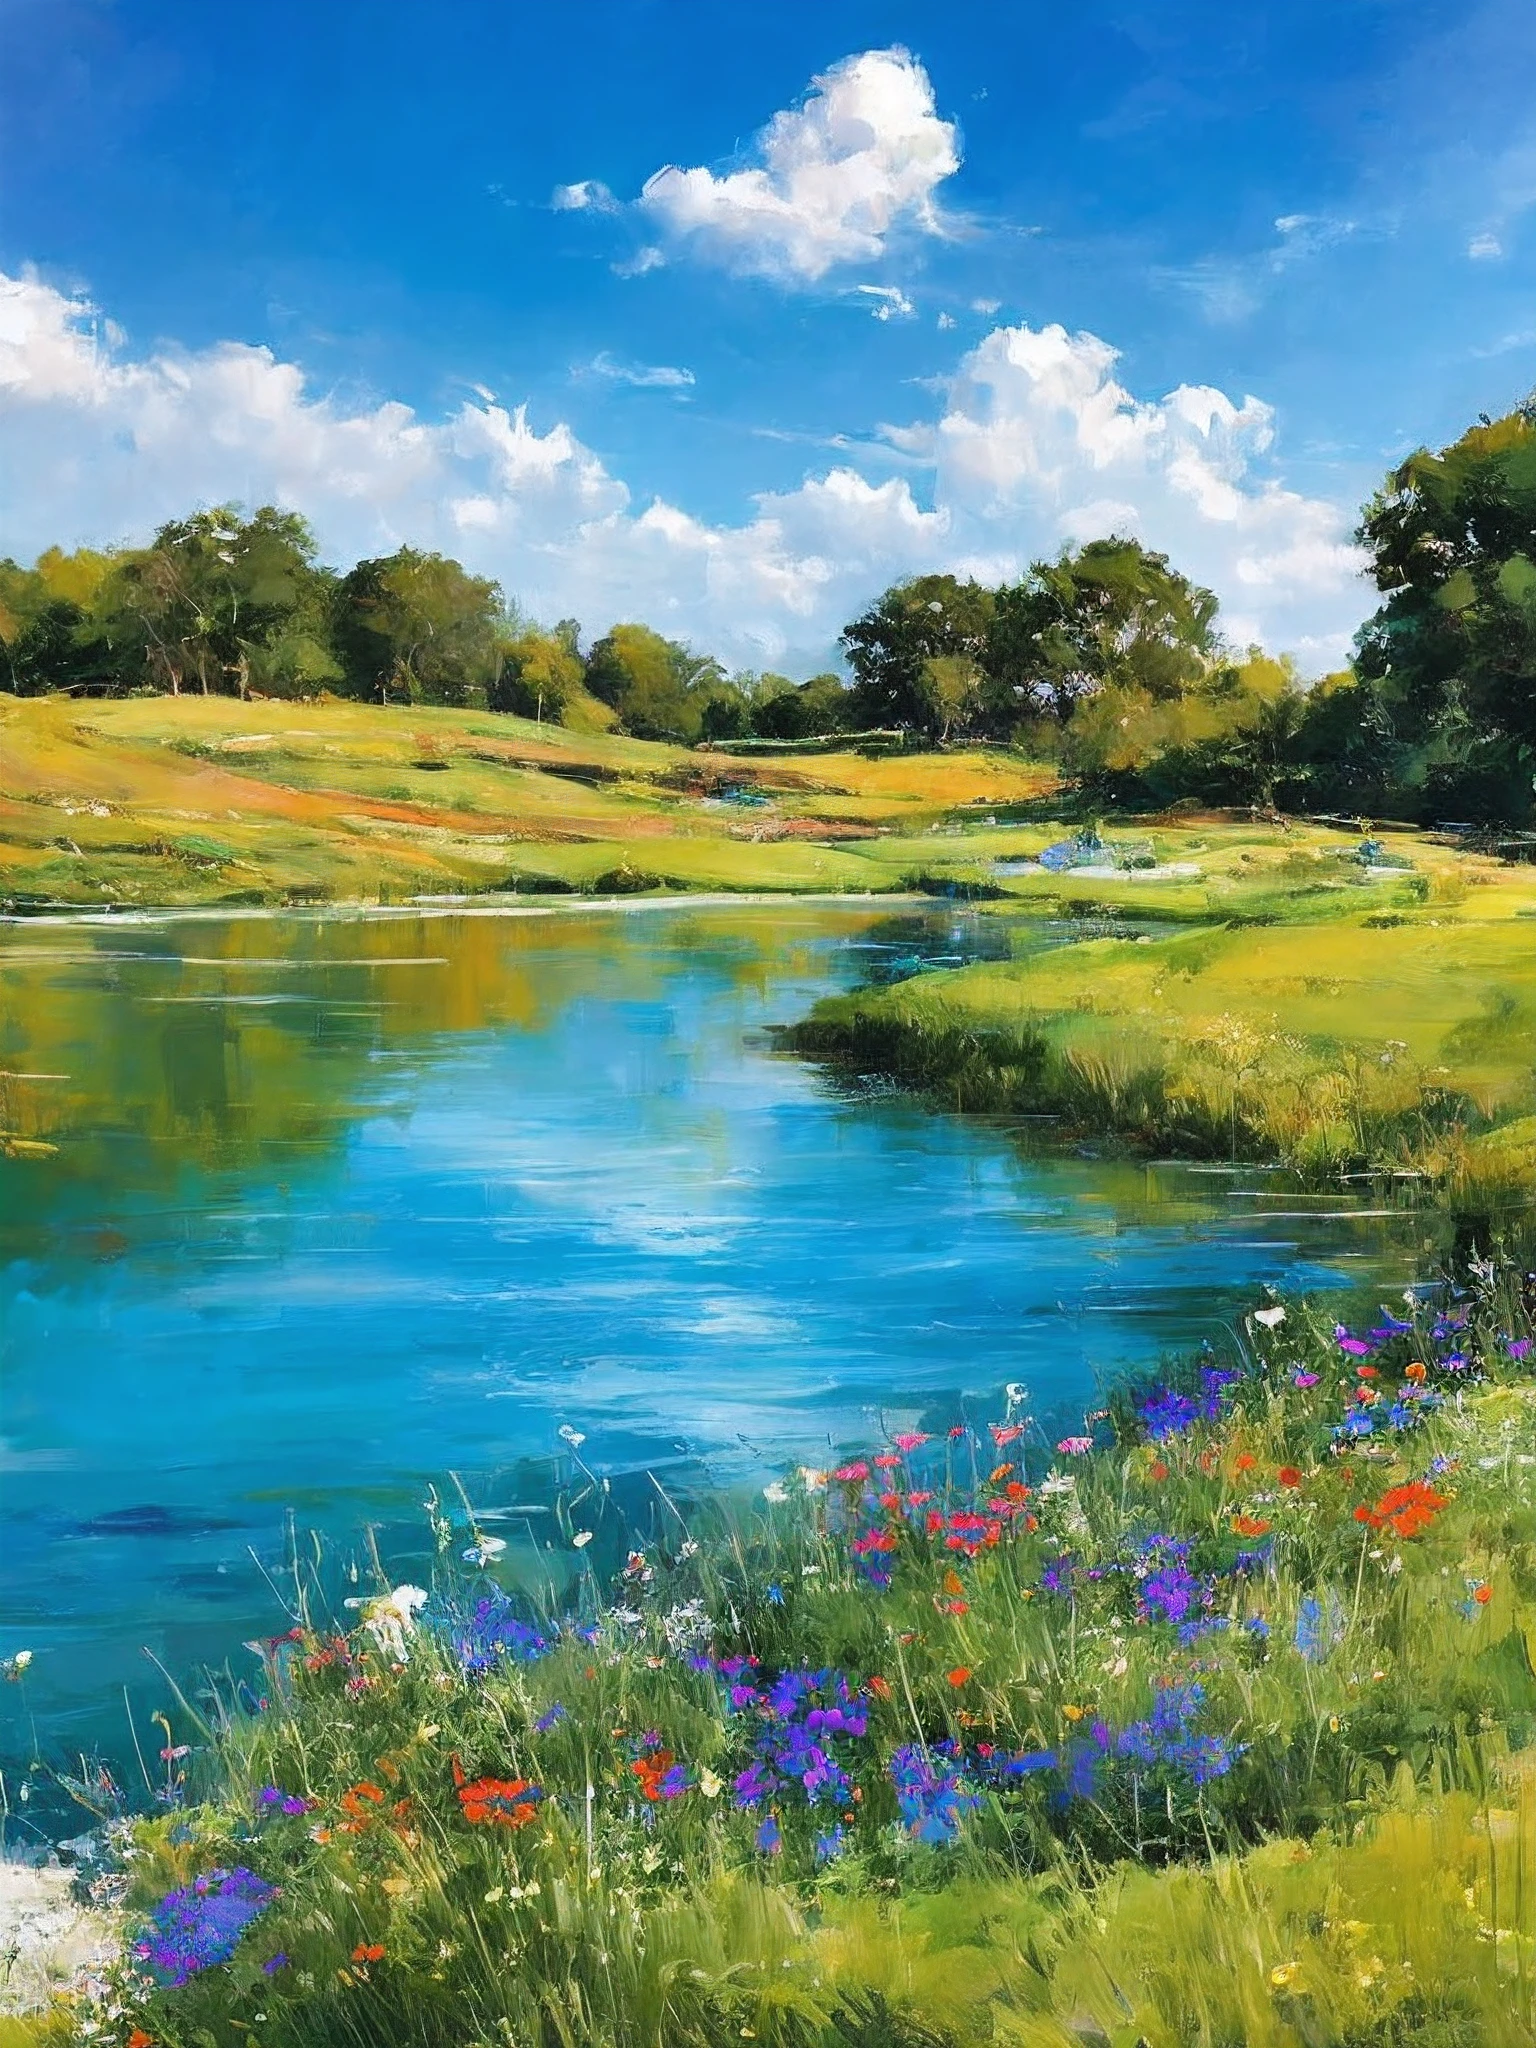 verão, campos gramados, flores, lago, paraíso, Céu azul claro, ensolarado, detalhe de alta definição, Hiper-detalhamento, Cinematic, iluminação dinâmica, foco de campo profundo, colorida